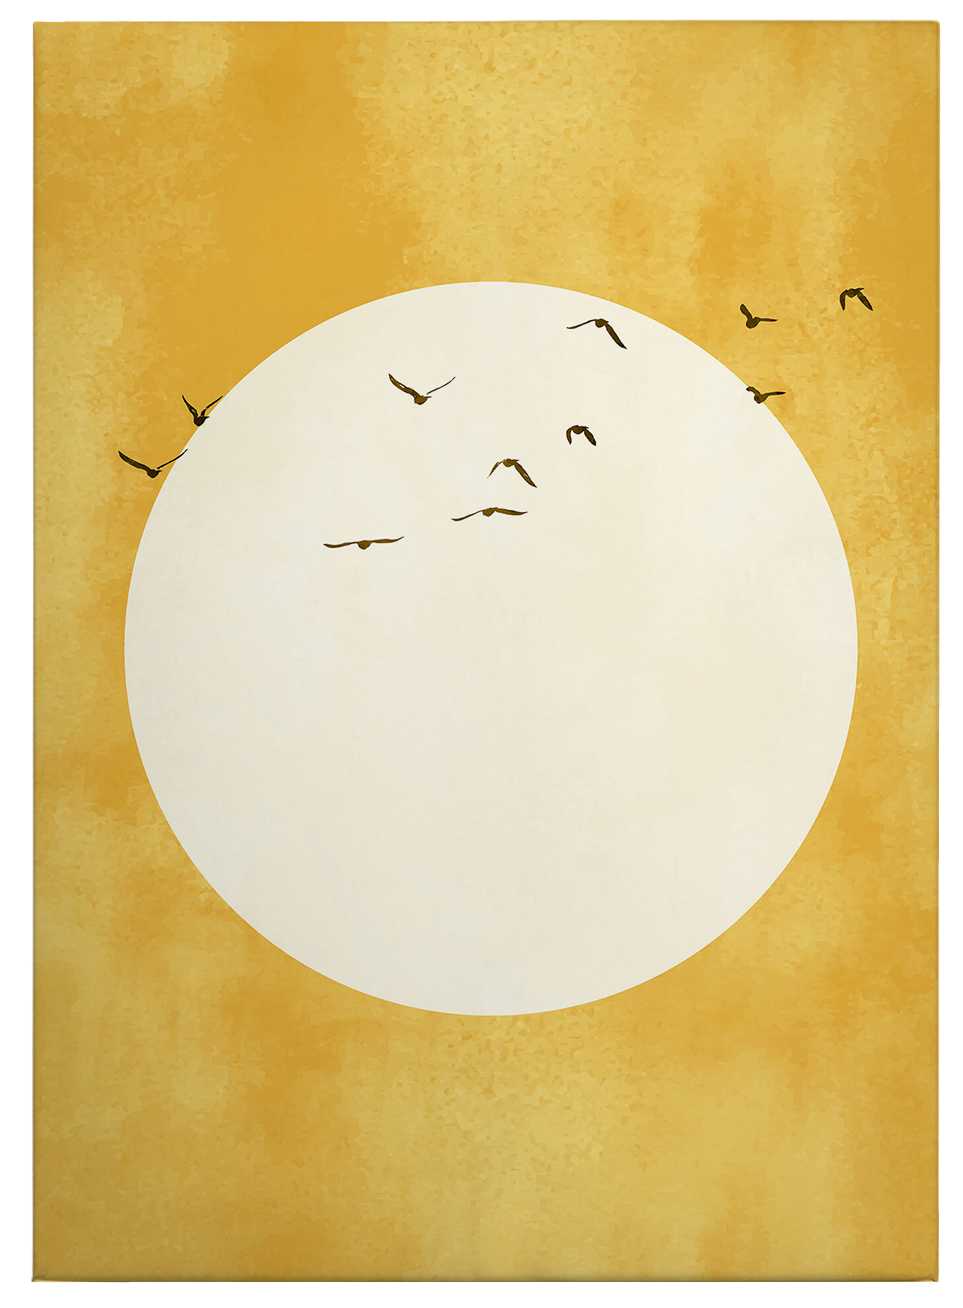             Leinwandbild "Sonnenschein" von Kubistika – 0,50 m x 0,70 m
        